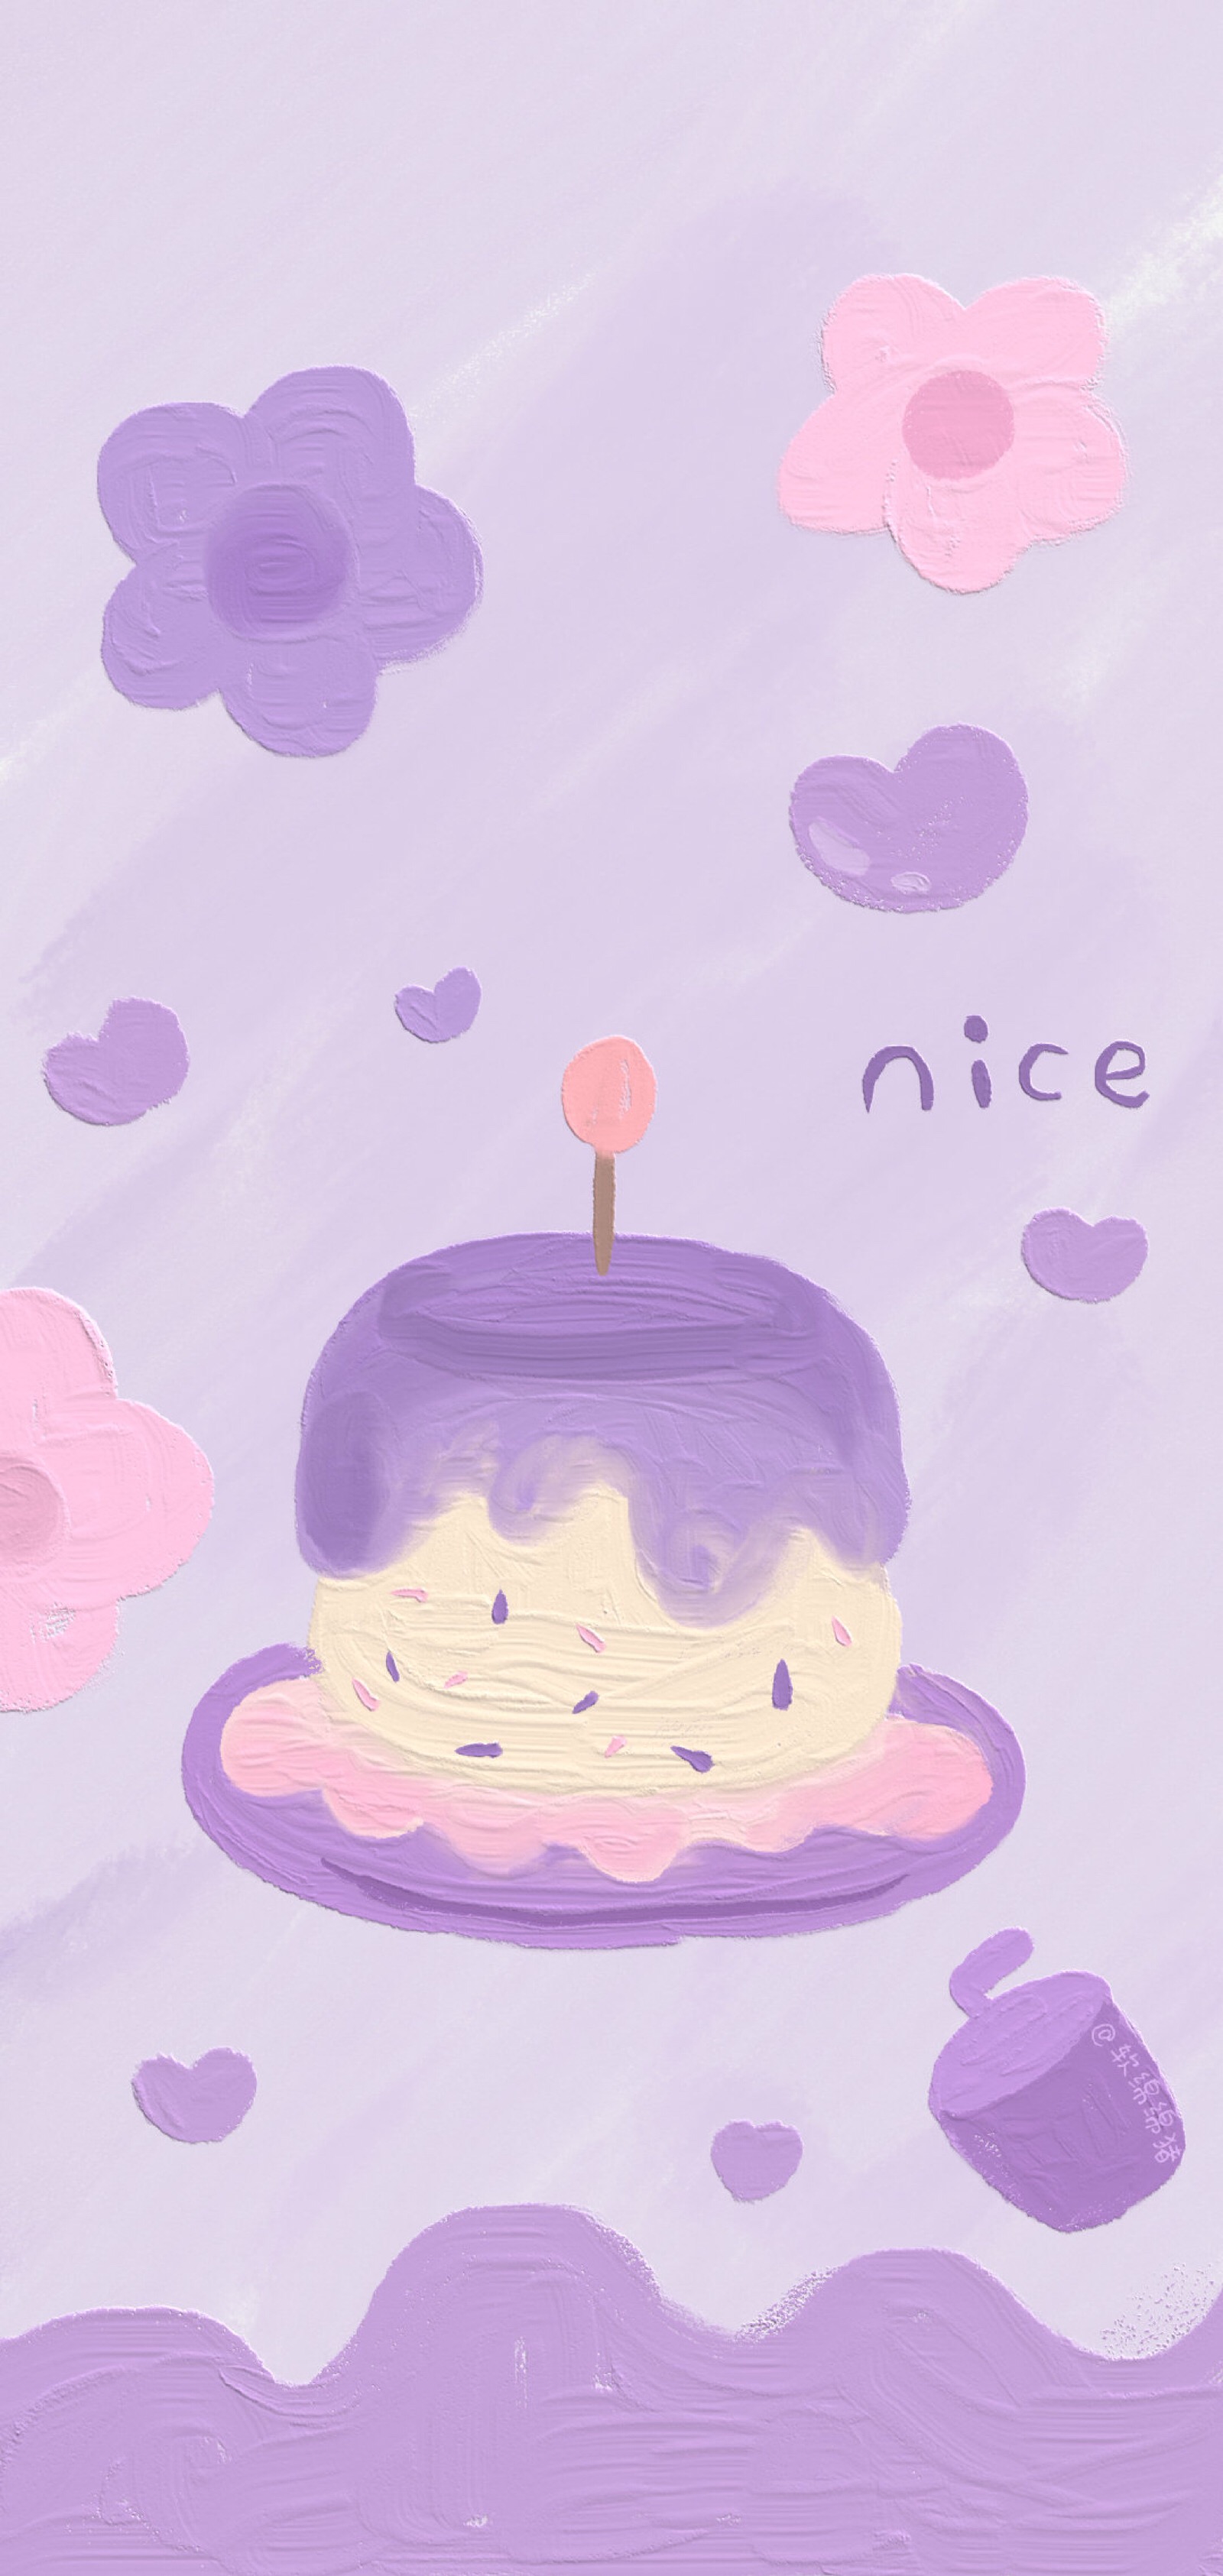 美好的事物一定会在新的一岁如约而至 祝你生日快乐 少女心壁纸 紫色